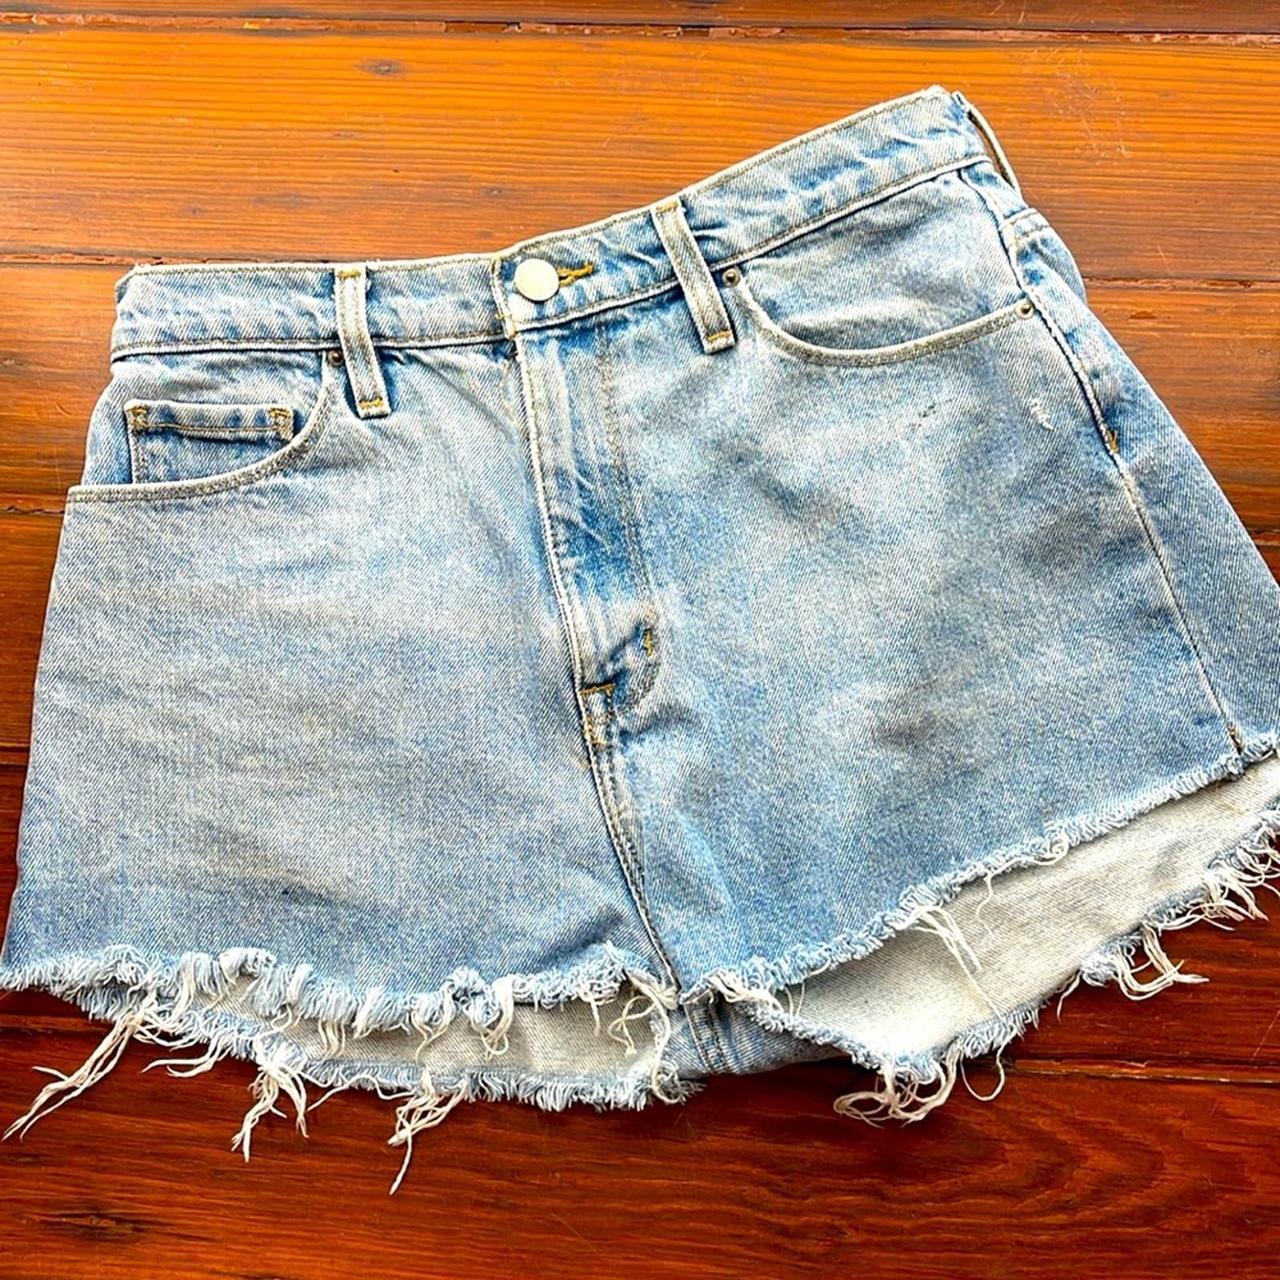 BDG cutoff hi rise denim jeans shorts sz 30 Waist: - Depop